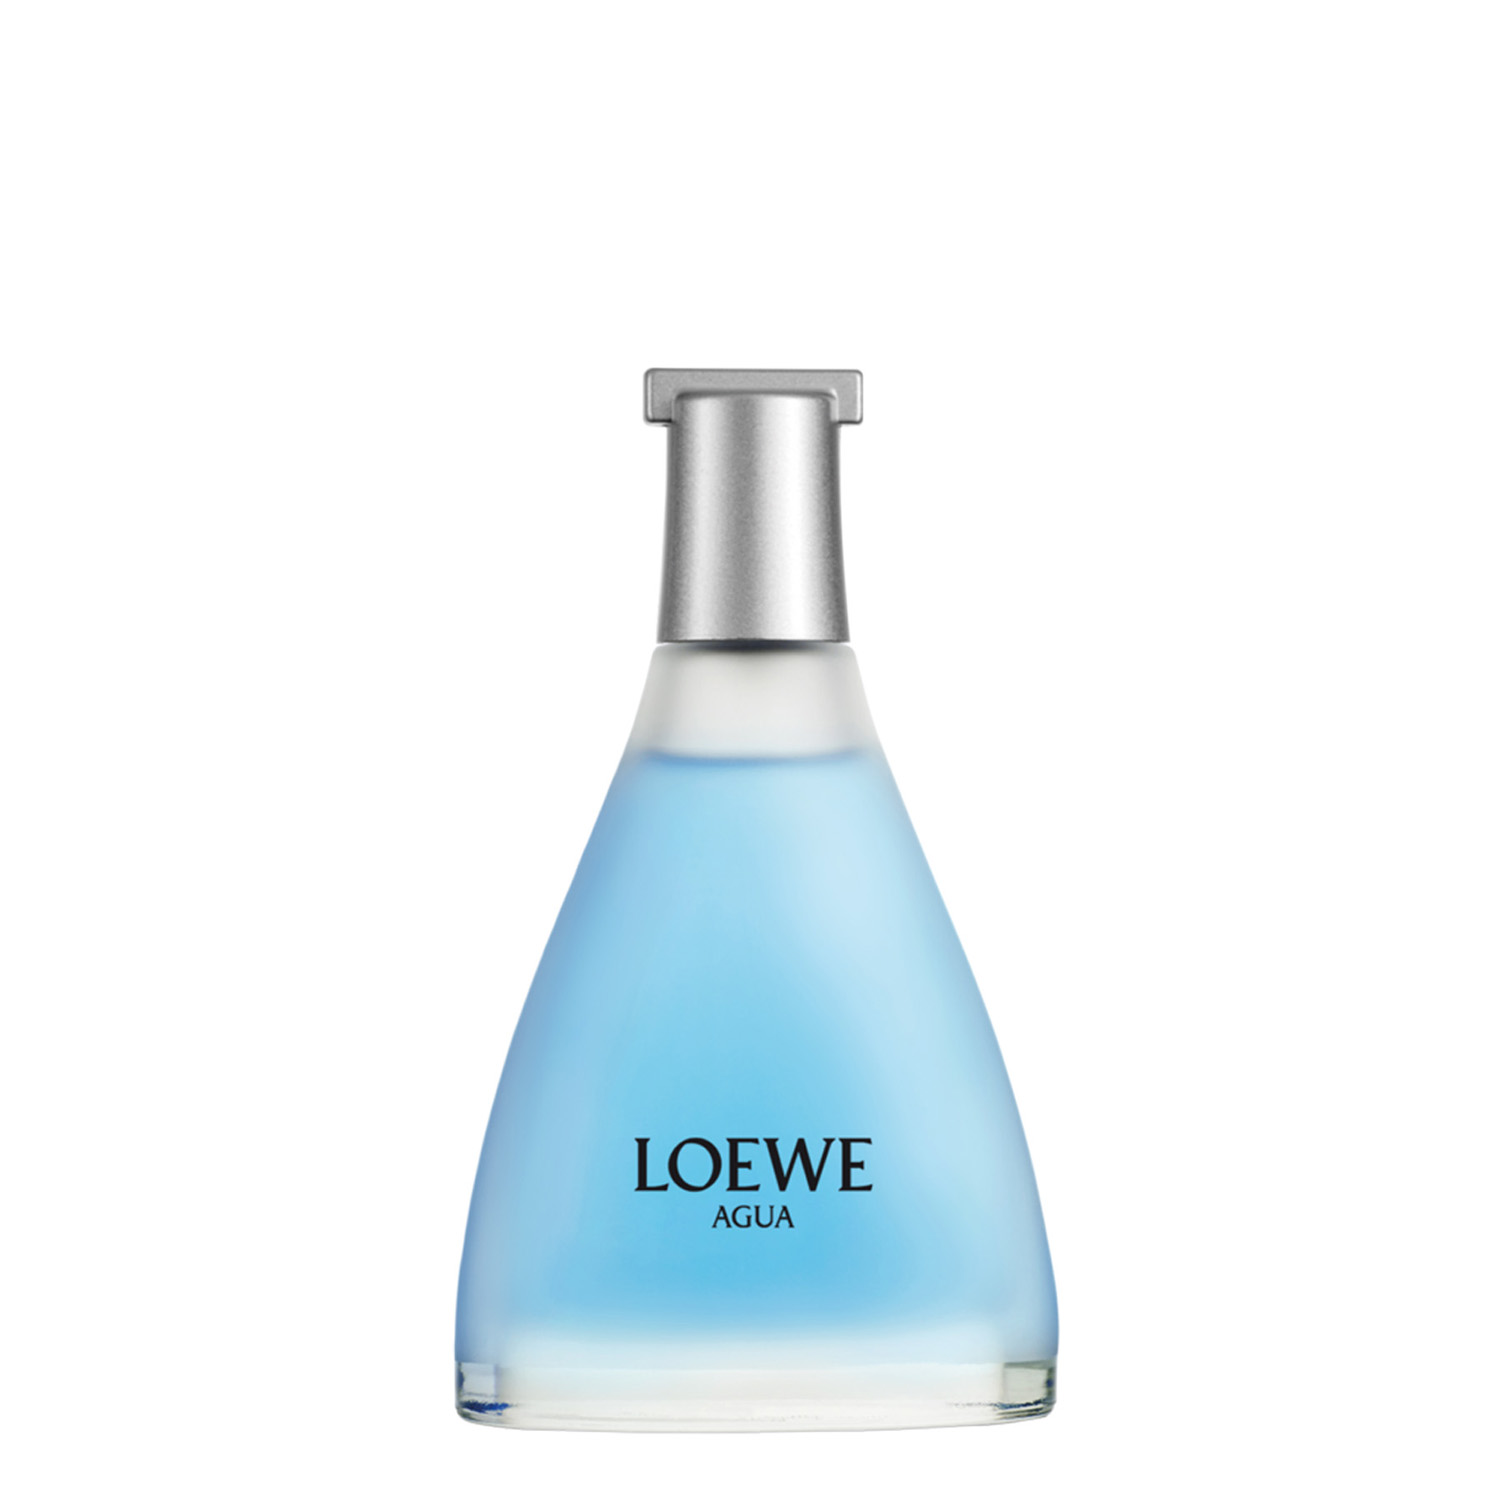 Loewe Agua - EL